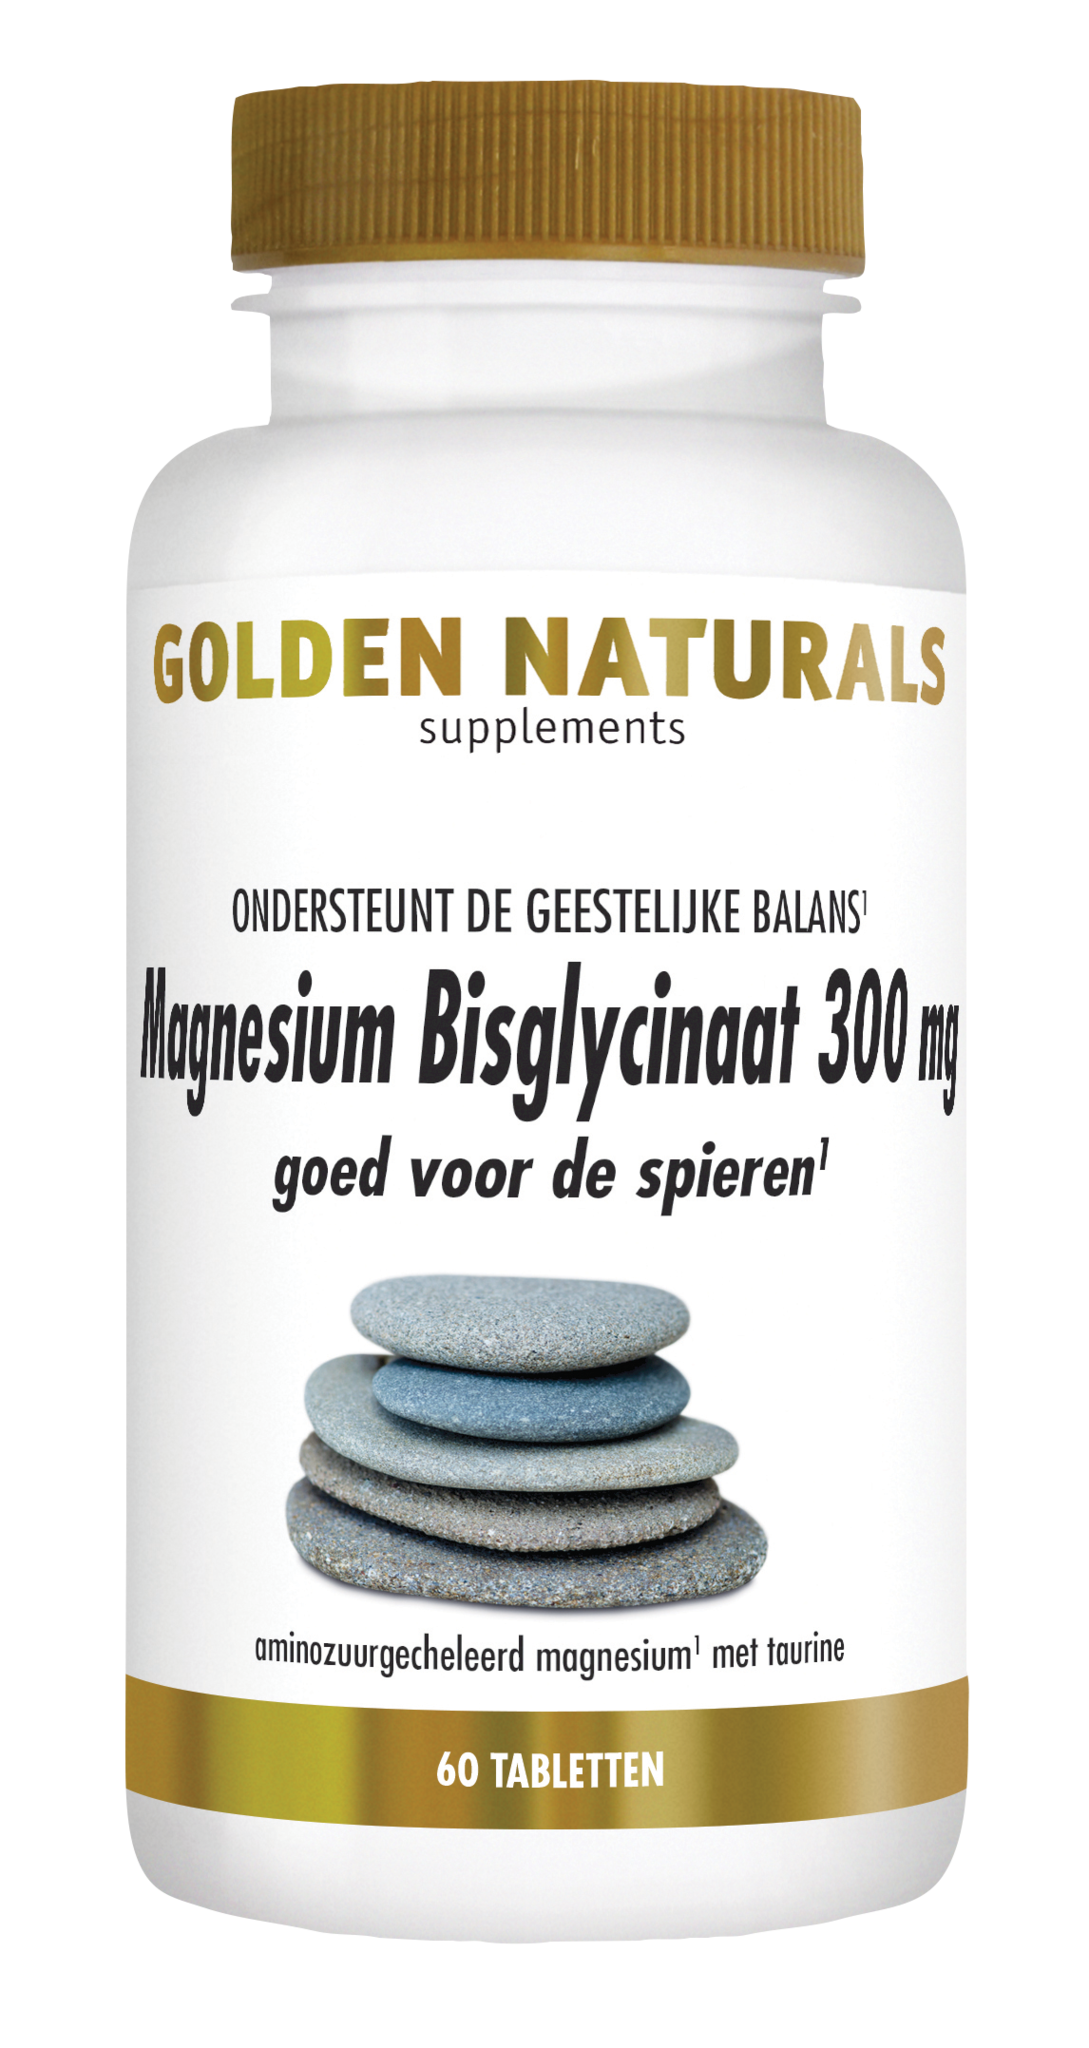 Golden Naturals Golden Naturals Magnesium Bisglycinaat 300 mg